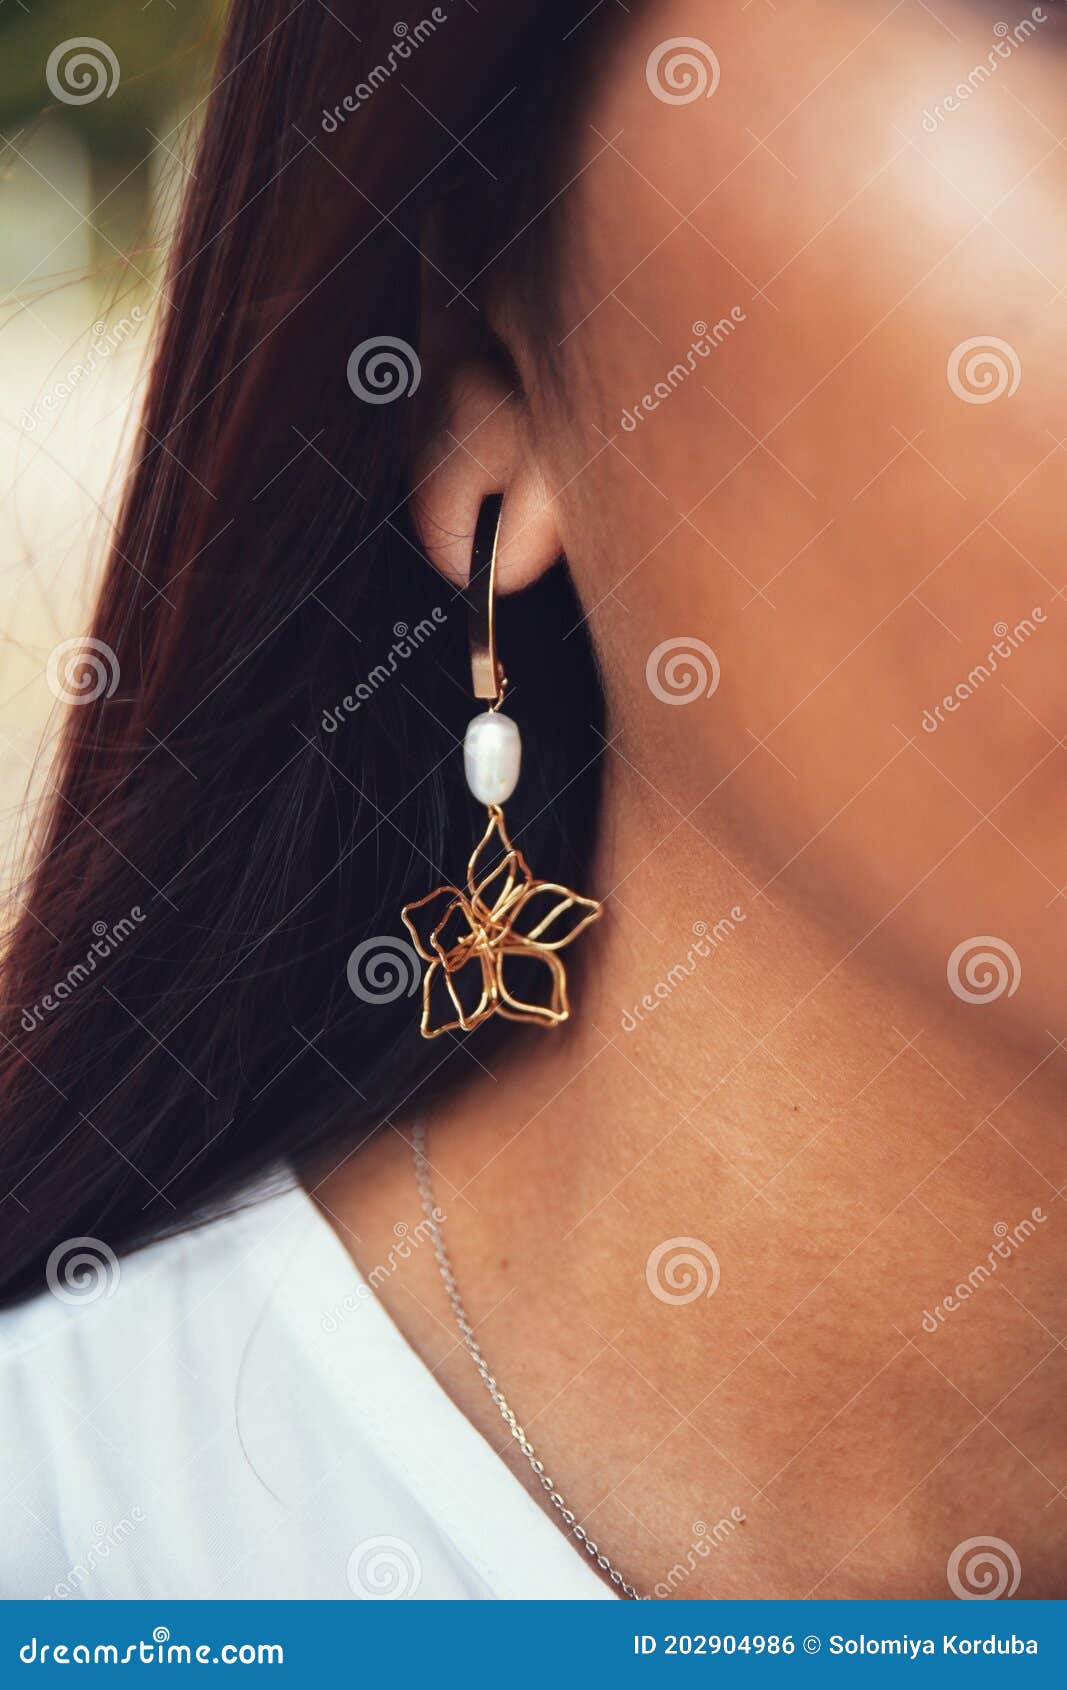 girl with her detalles spring earrings flower